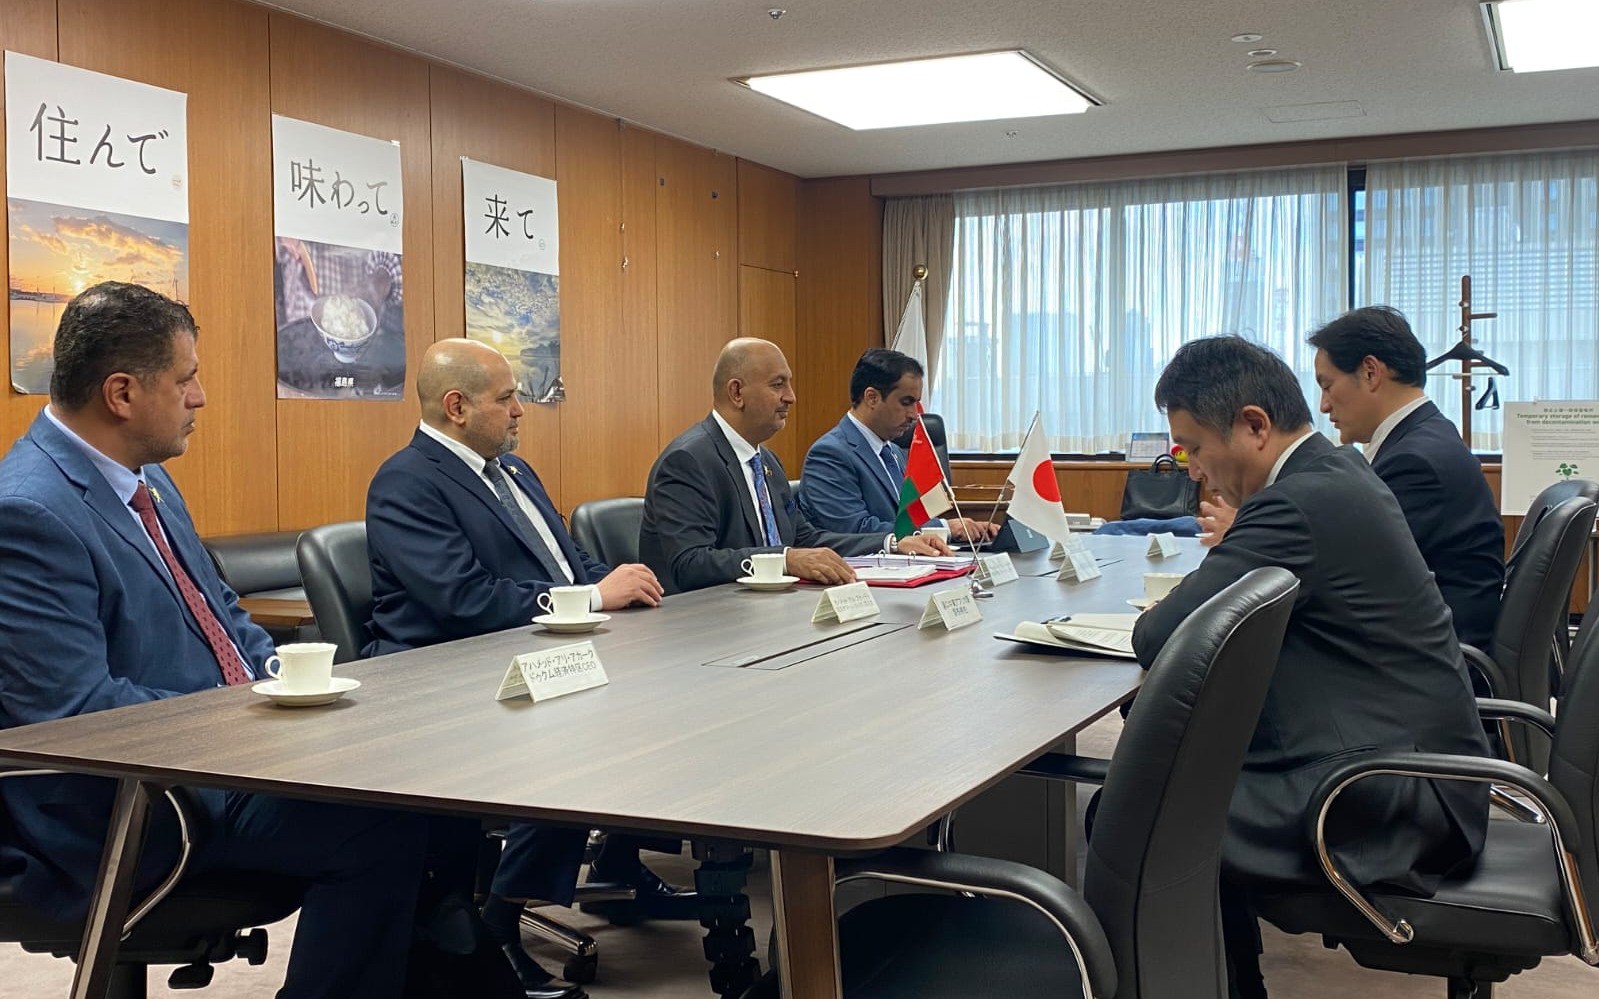 السنيدي يترأس وفد الهيئة العامة للمناطق الاقتصادية الخاصة والمناطق الحرة إلى اليابان